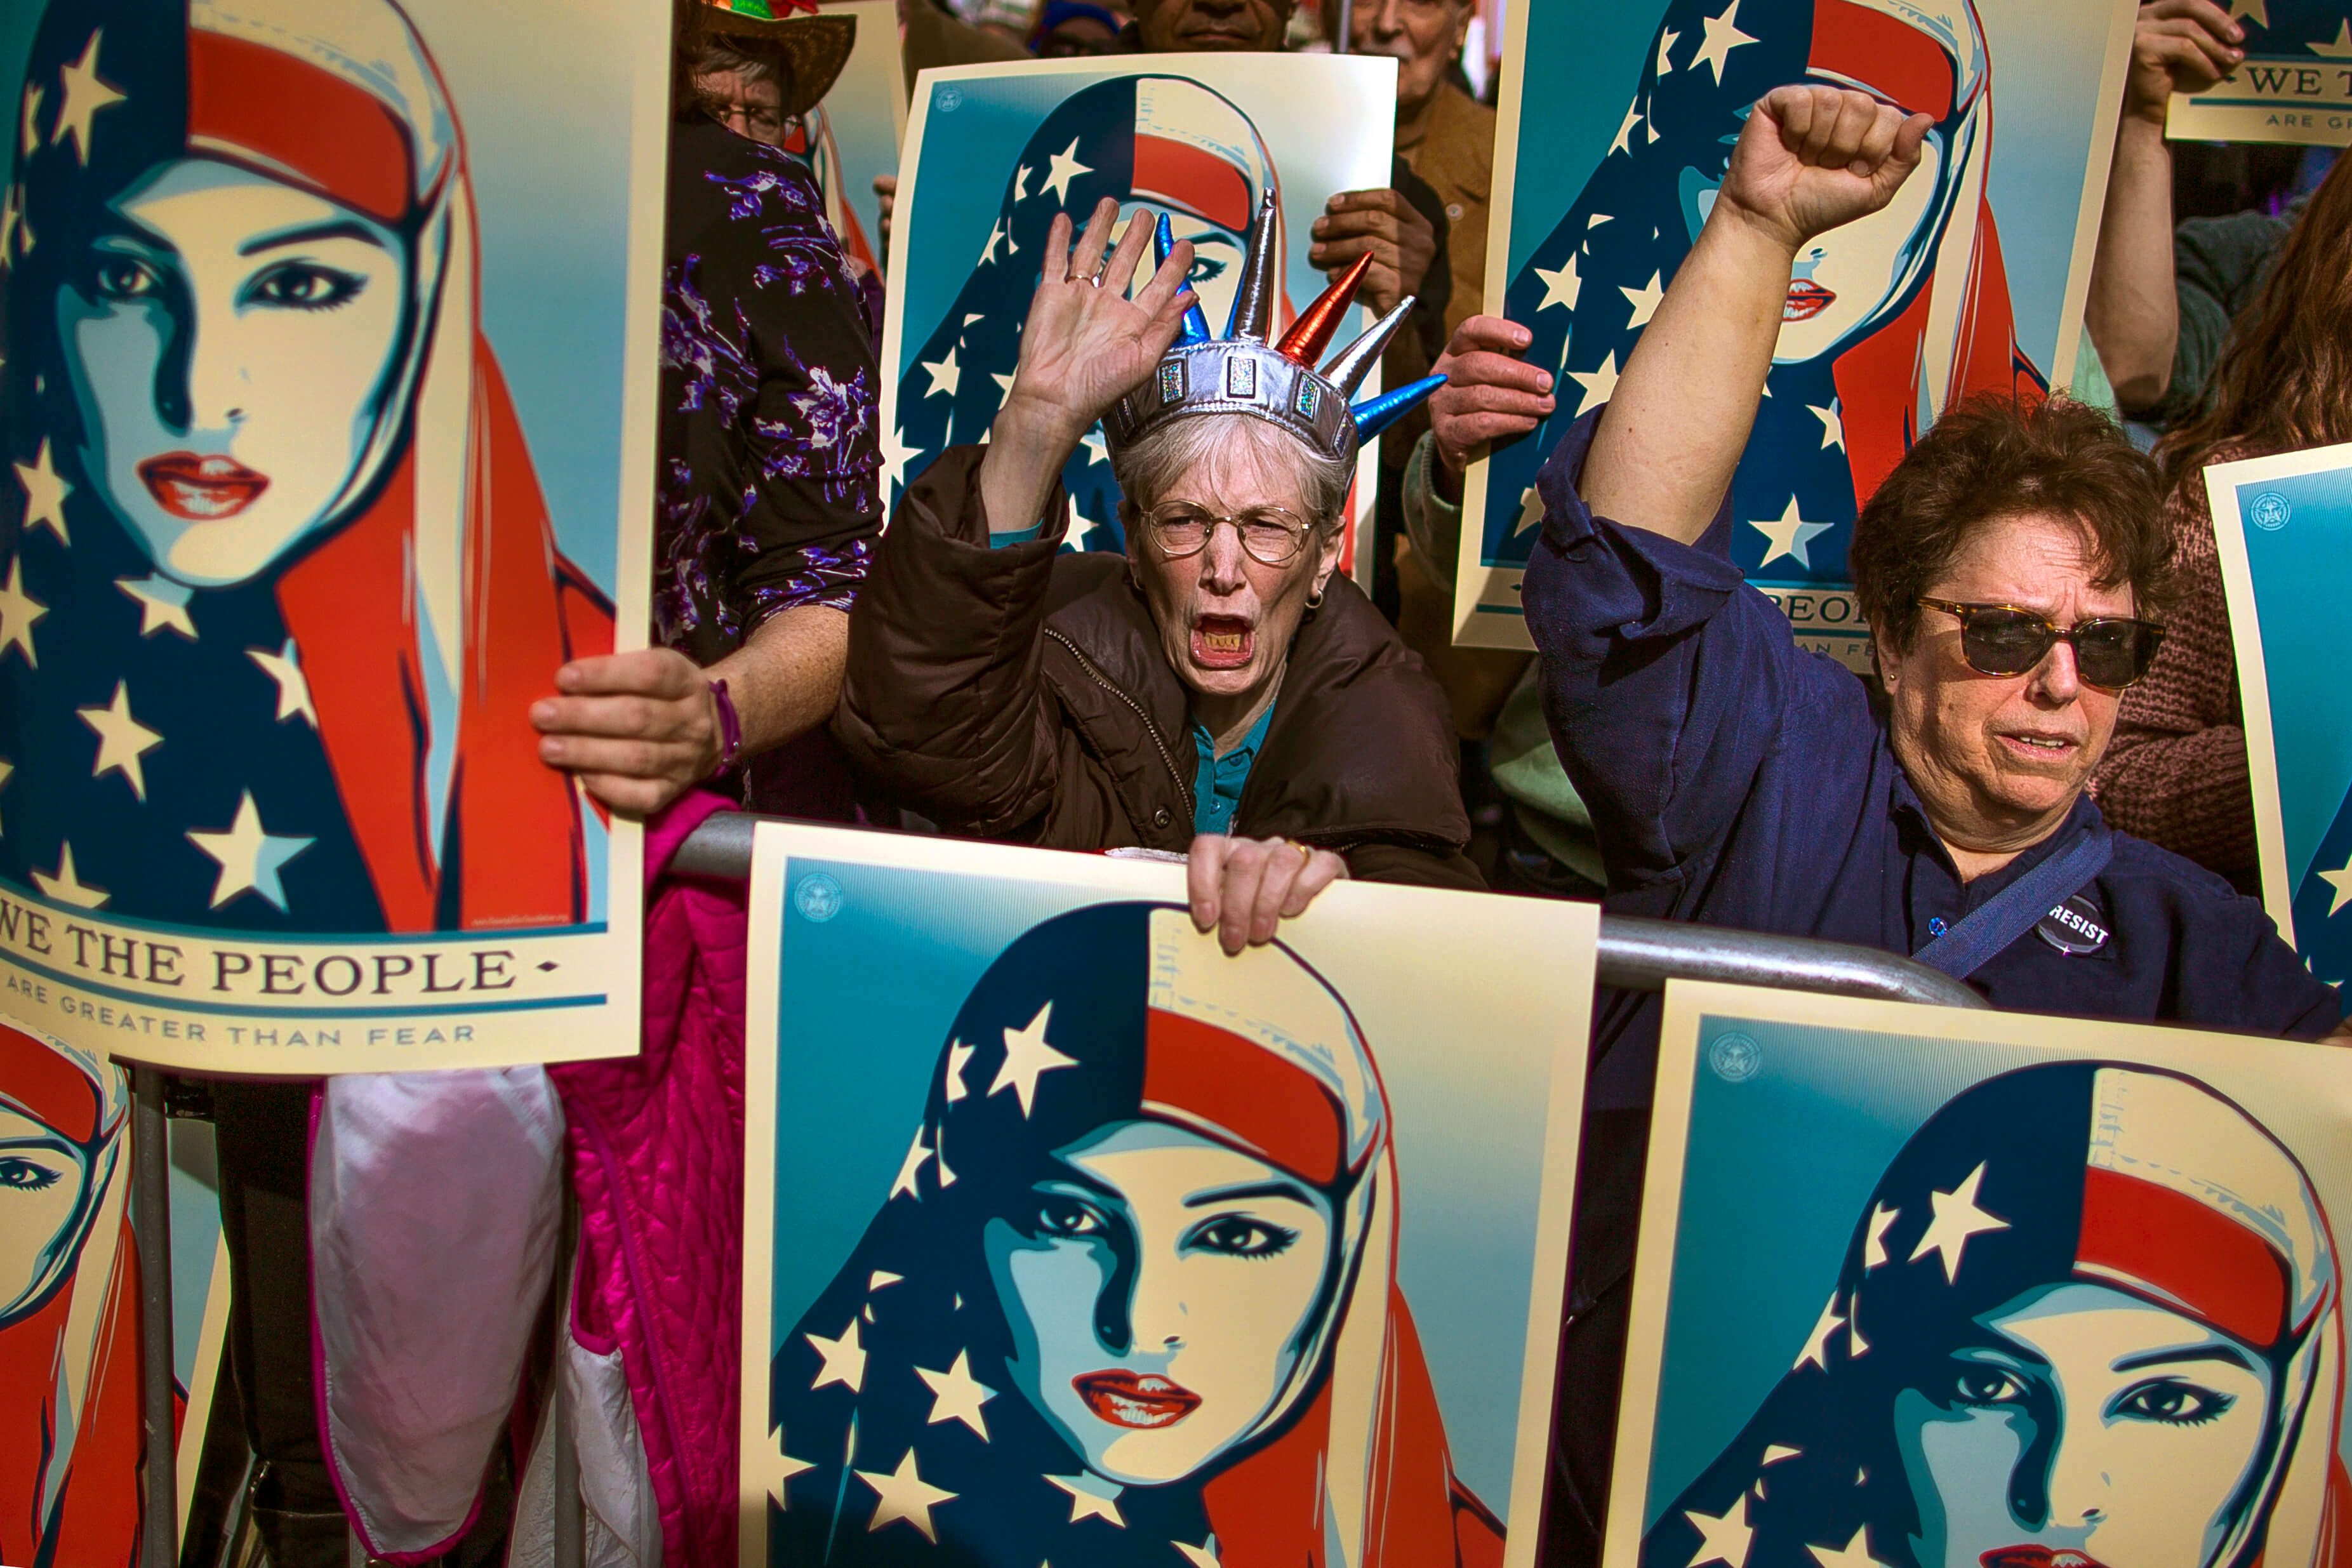 Mujeres protestan contra veto migratorio de Donald Trump en Estados Unidos